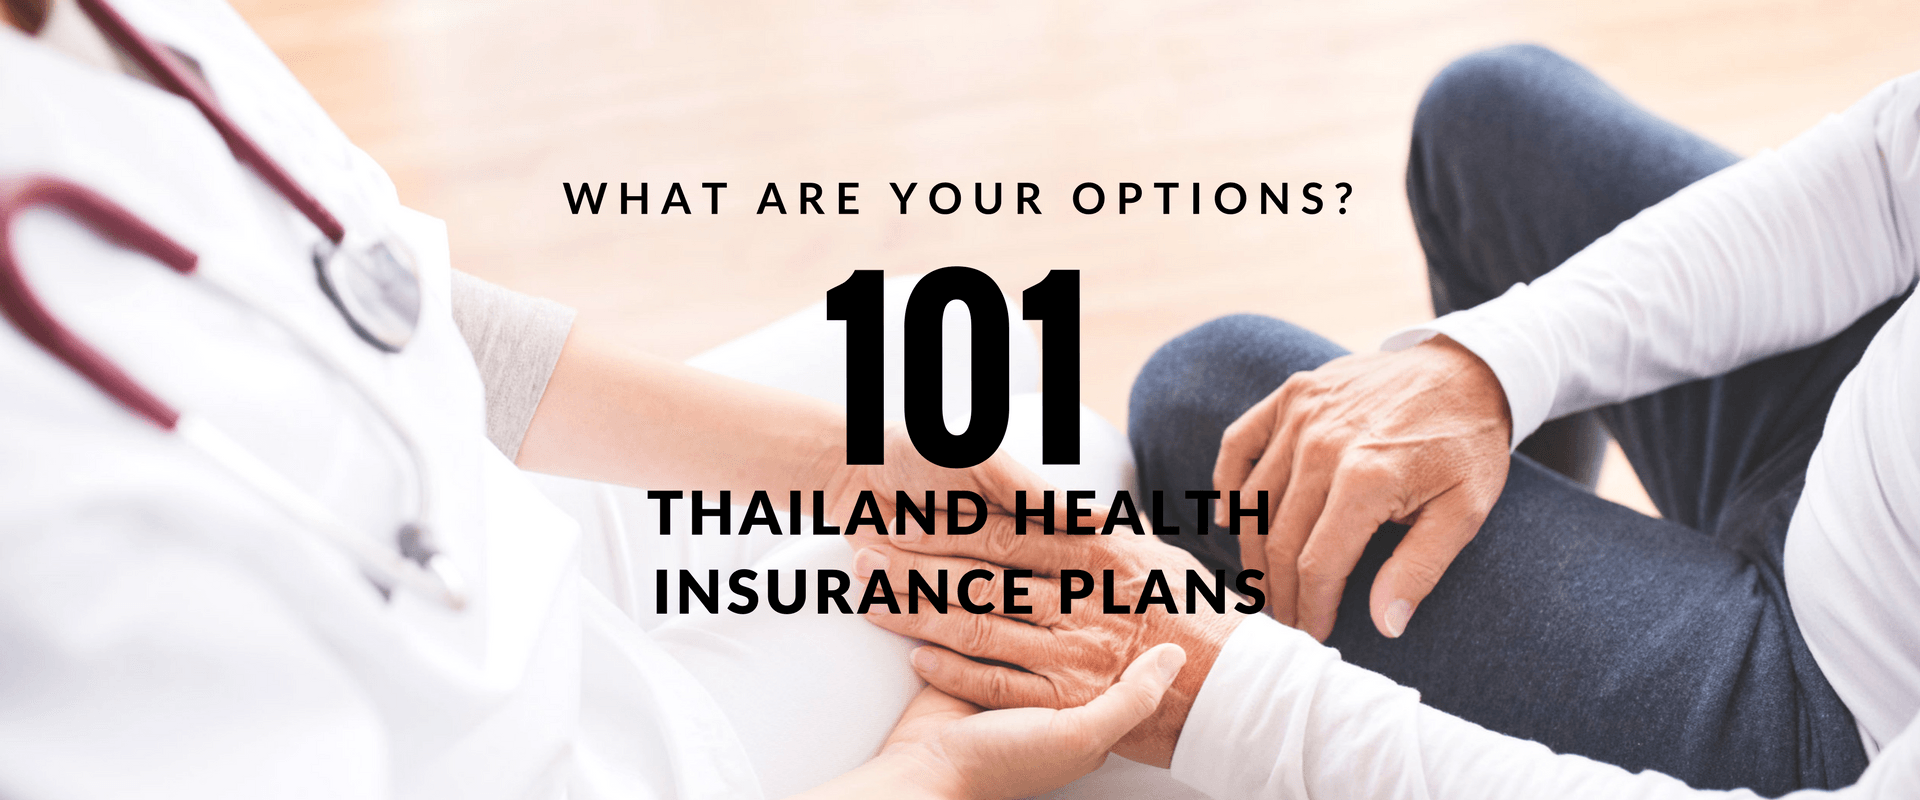 , Les plans d&#8217;assurance santé en Thaïlande 101 : Quelles sont vos options ?